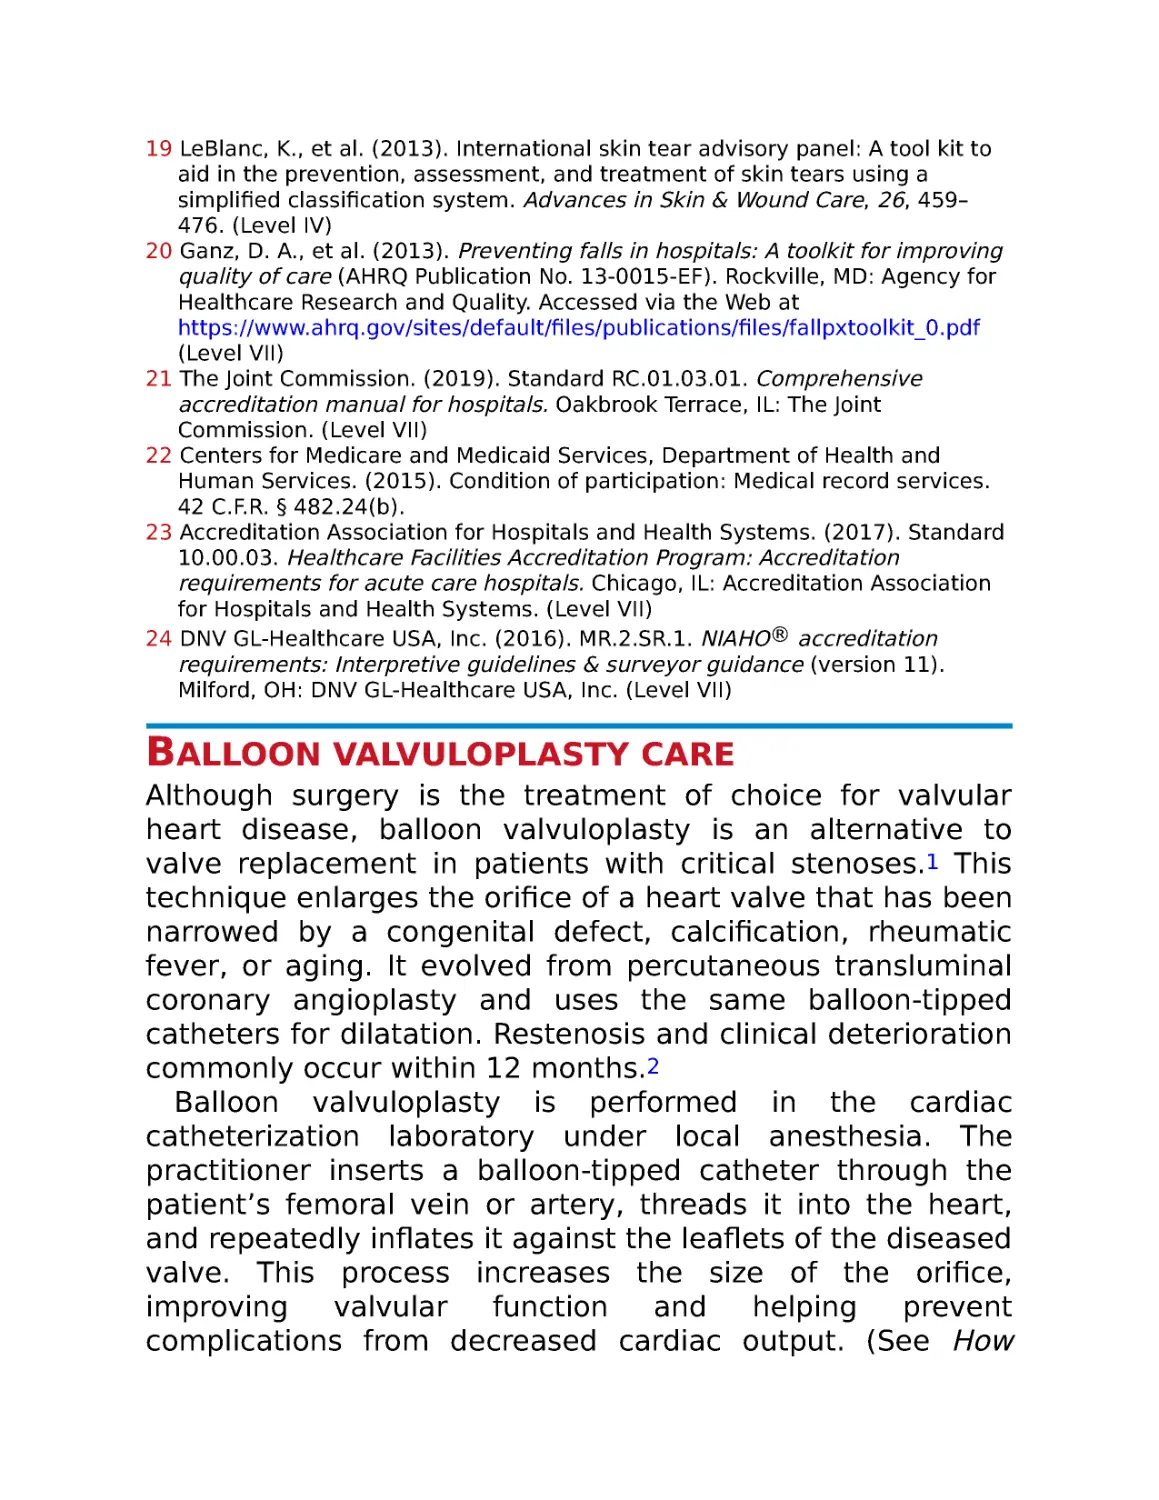 Balloon valvuloplasty care